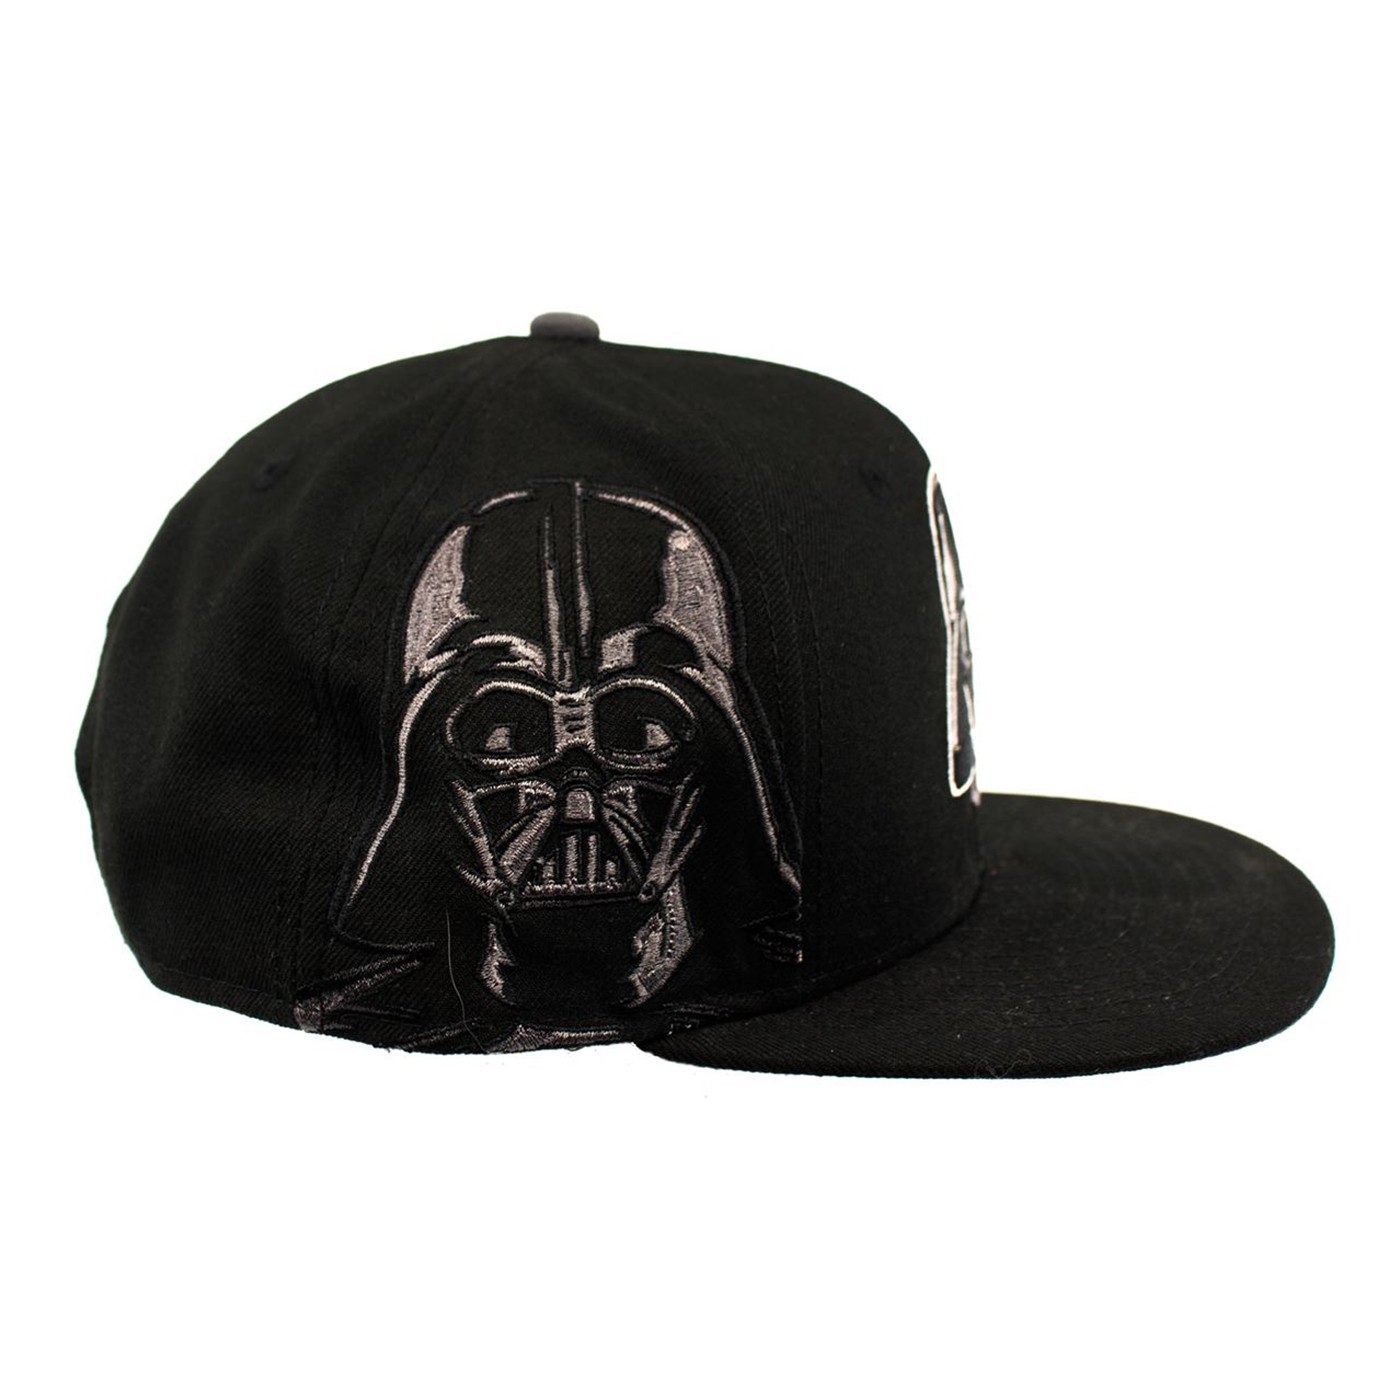 Star Wars Vader Symbol New Era Adjustable Snapback